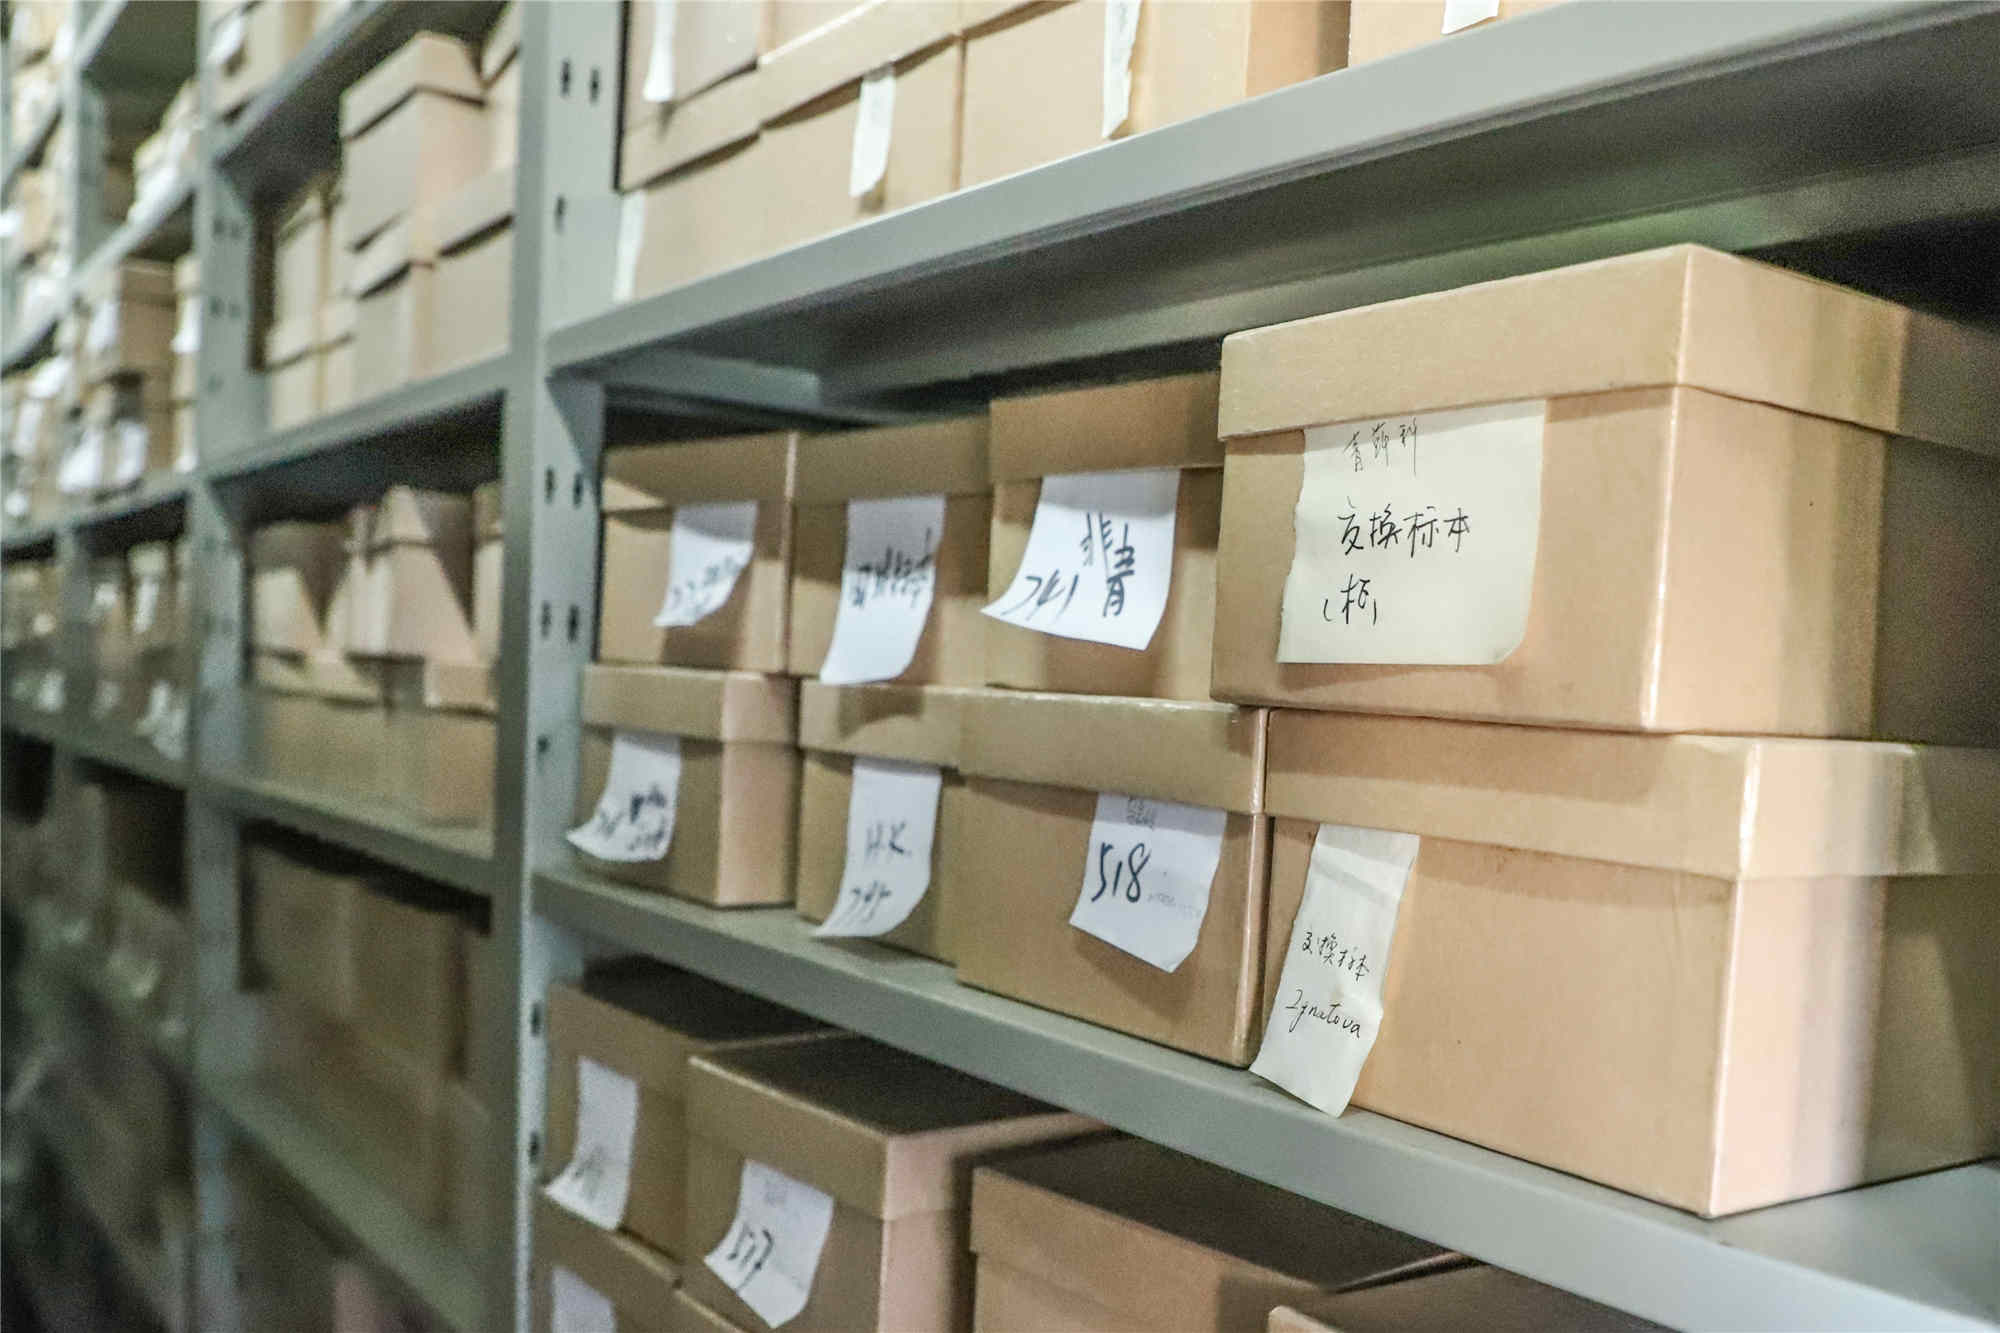 华东师大生物博物馆藏有10万余件苔藓标本.jpg